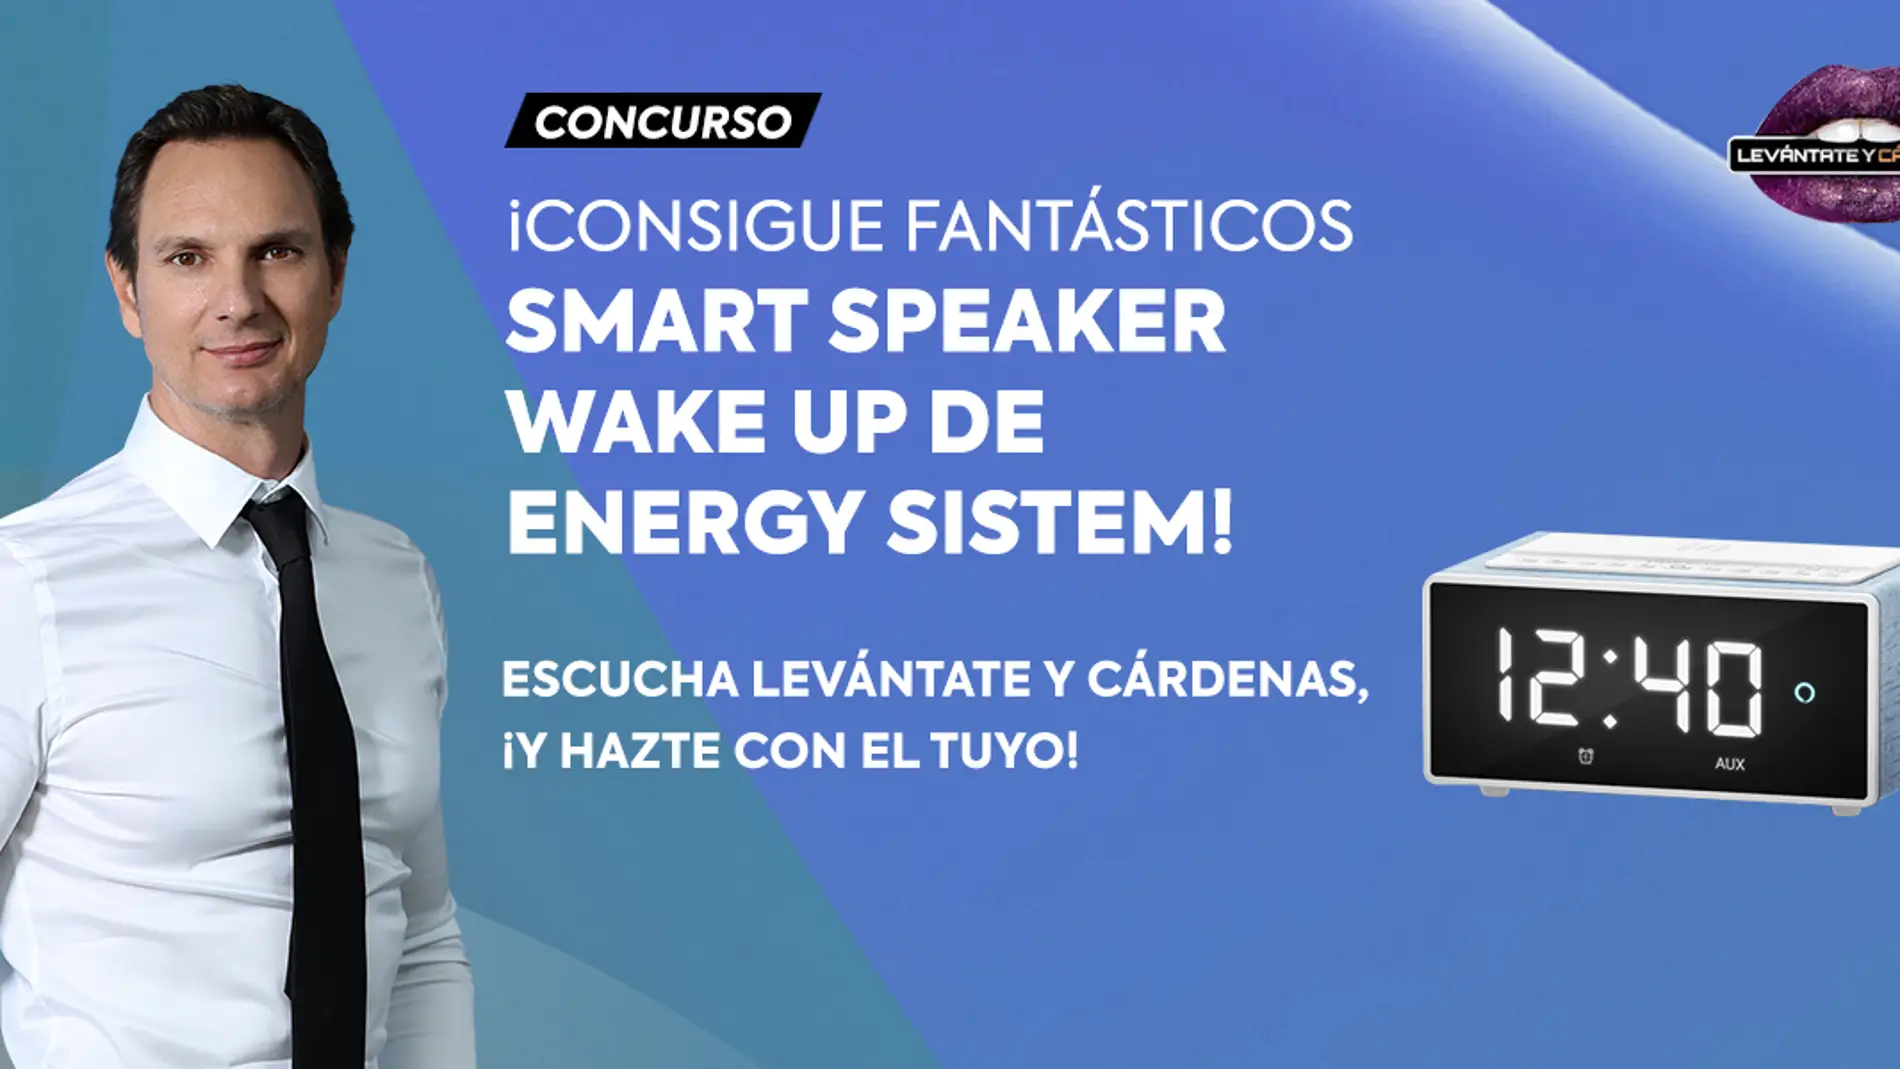 Concurso en 'Levántate y Cárdenas': ¡Consigue fantásticos Smart Speaker Wake Up de Energy Sistem!